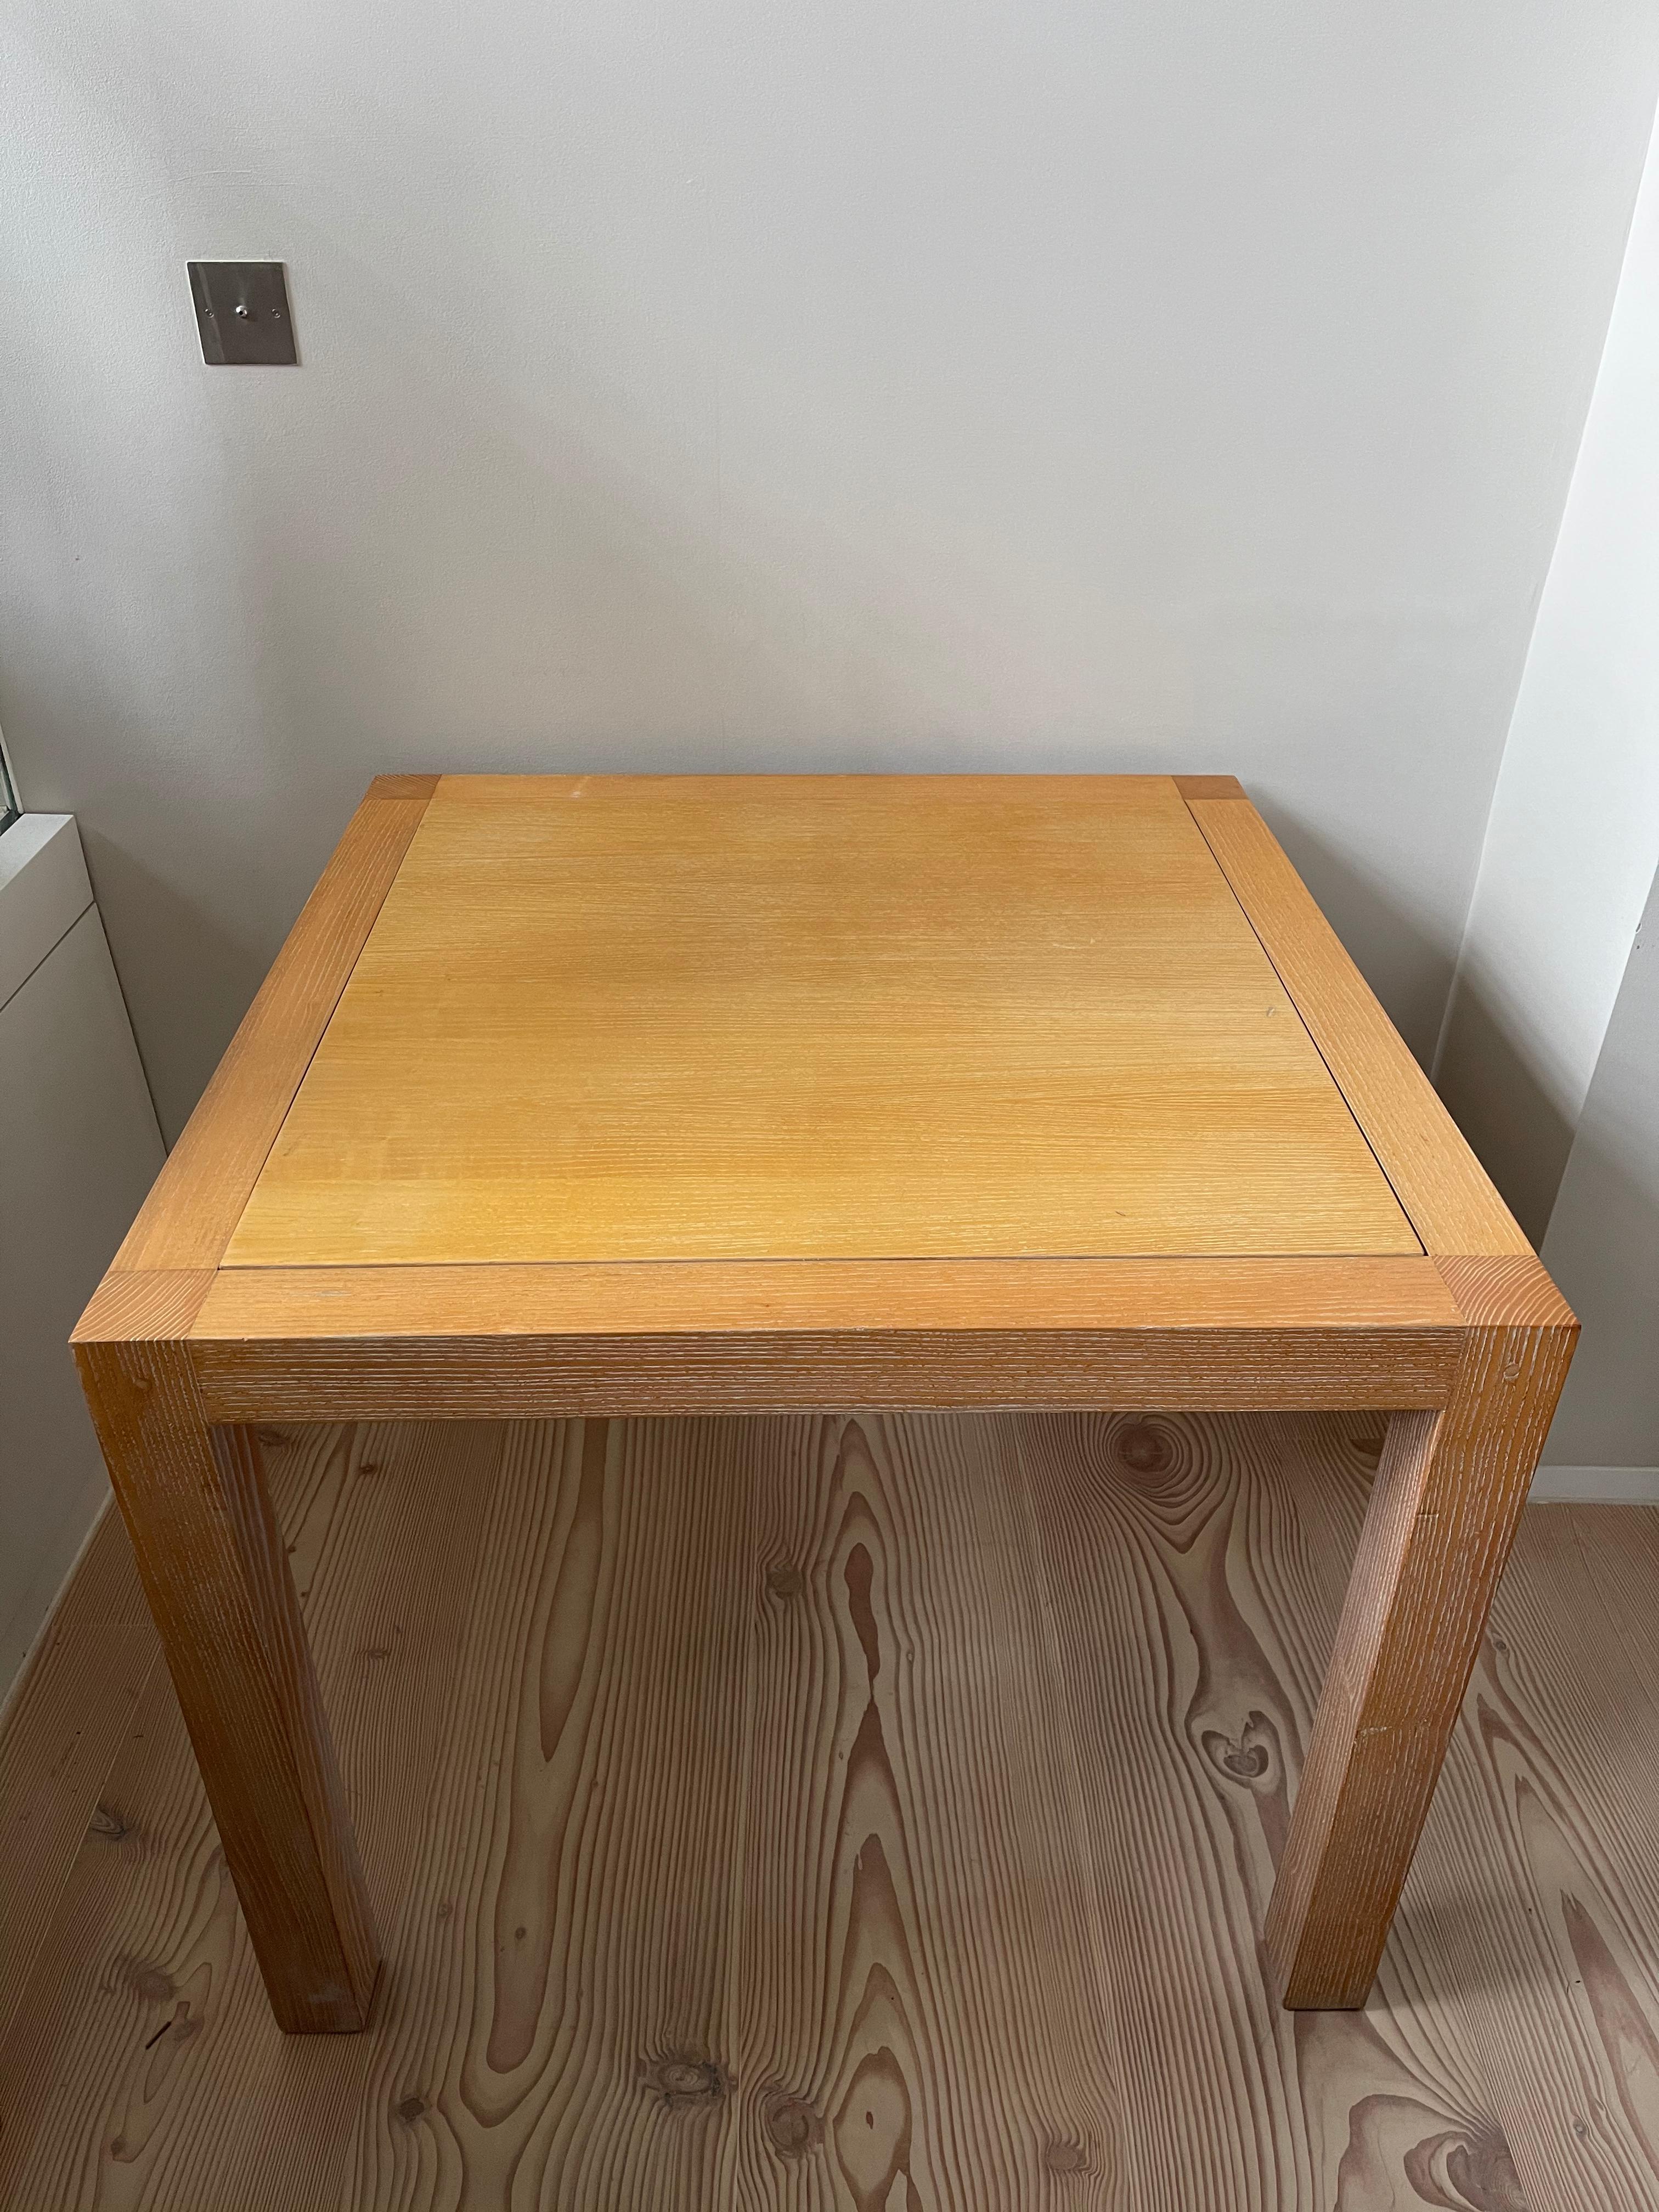 Spieltisch aus Eiche Cerused von Jacques Grange, entworfen für das Studio von Yves Saint Laurent in der Avenue de Breteuil.
Die Tischplatte ist auf einer Seite aus Filz und auf der anderen Seite aus Eiche Cerused.
Originalzustand, mit leichten